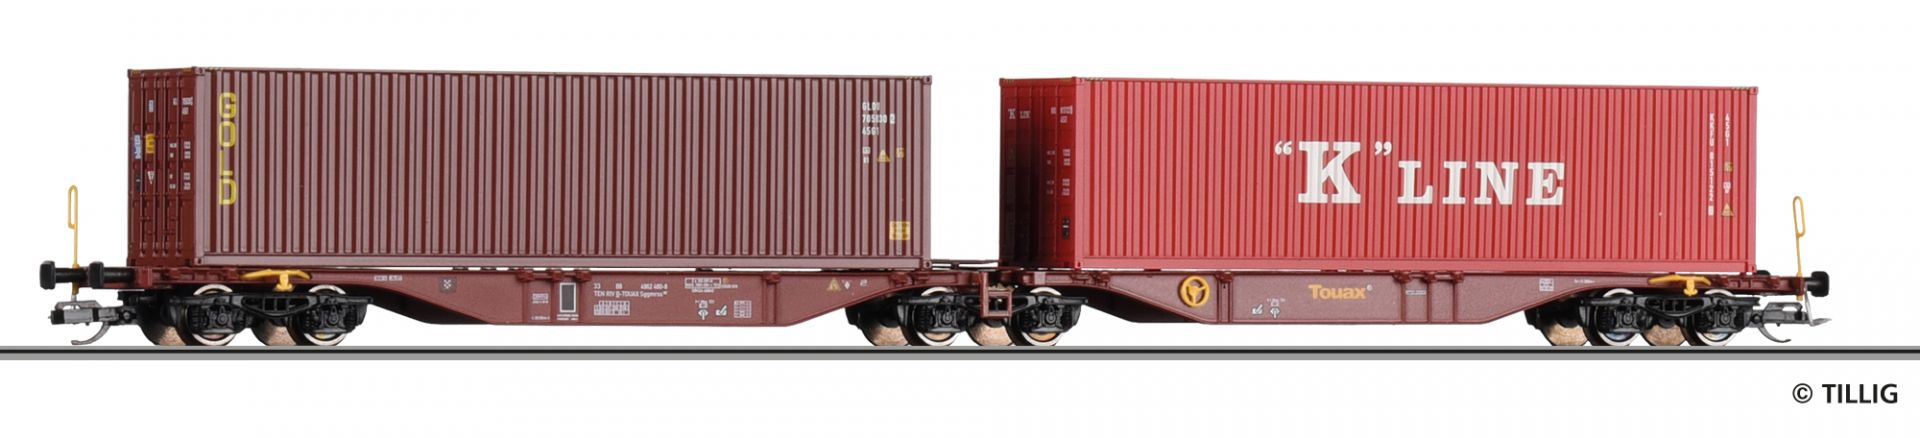 18070 | Container car Touax